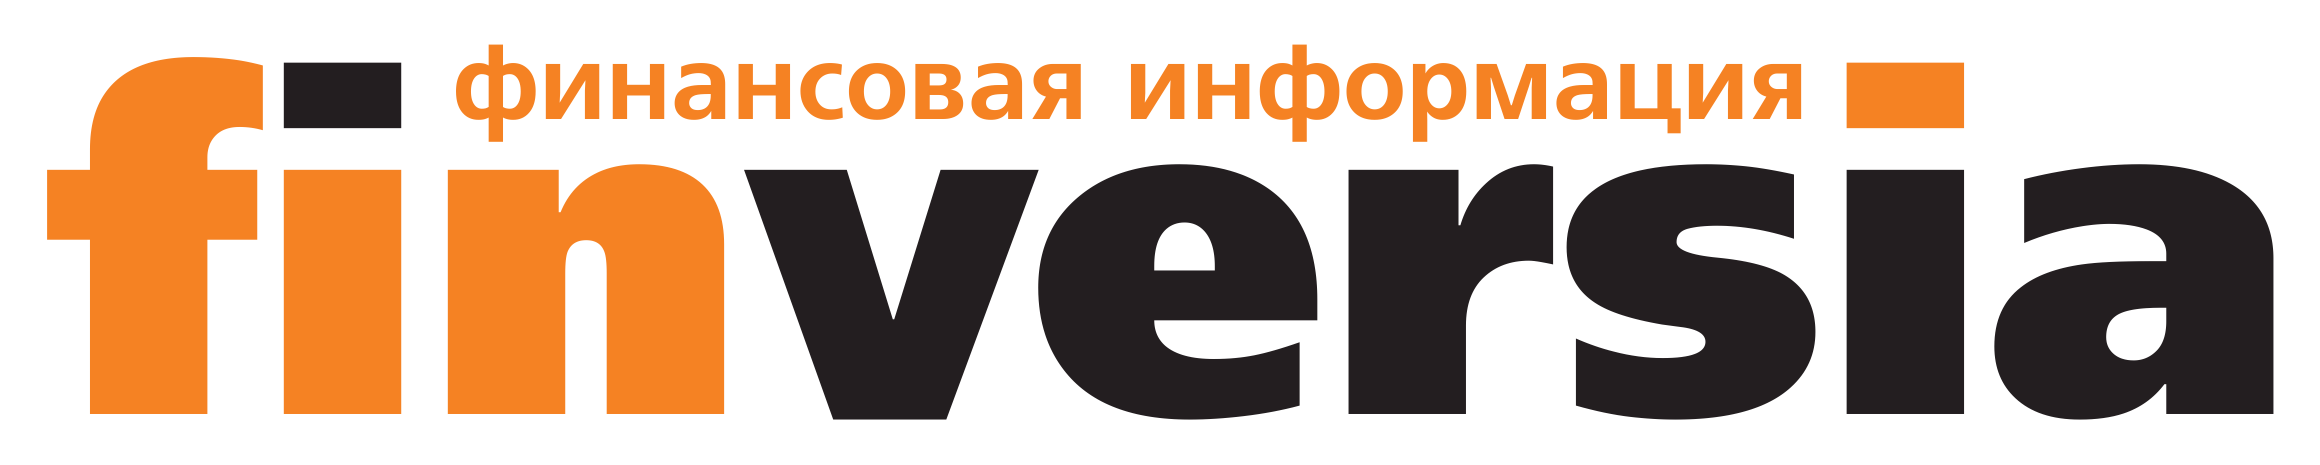 Finversia.ru